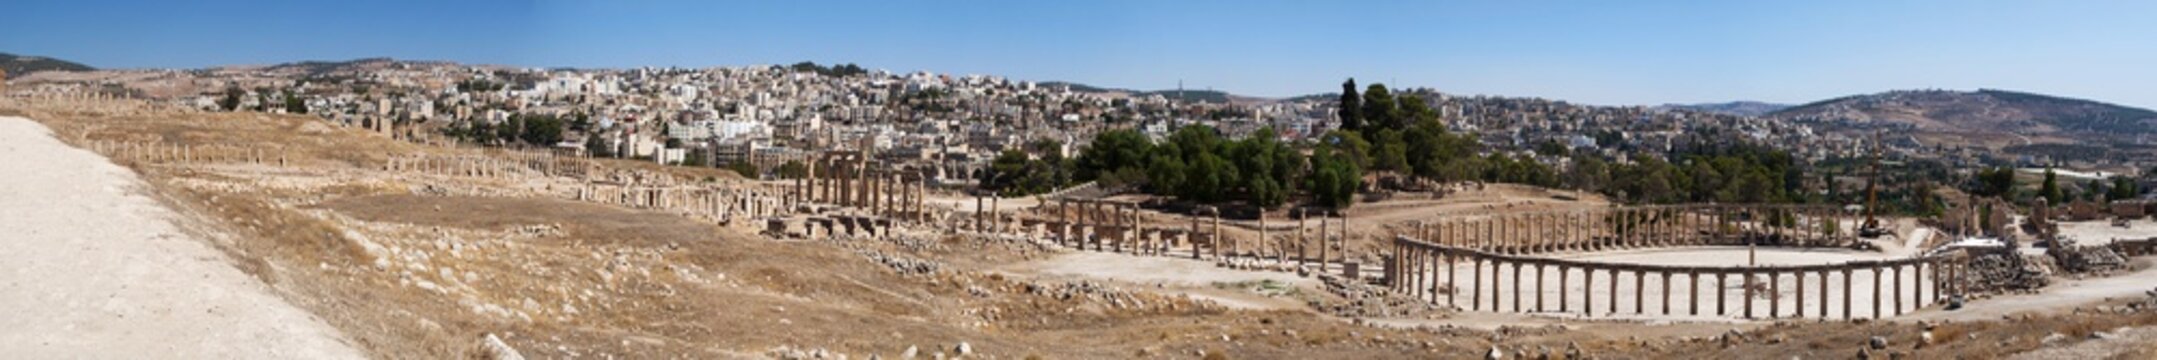 Giordania, 04/10/2013: lo skyline della moderna Jerash con vista del Foro ovale e del Cardo Massimo dell'antica Gerasa, uno dei siti di architettura romana meglio conservati al mondo